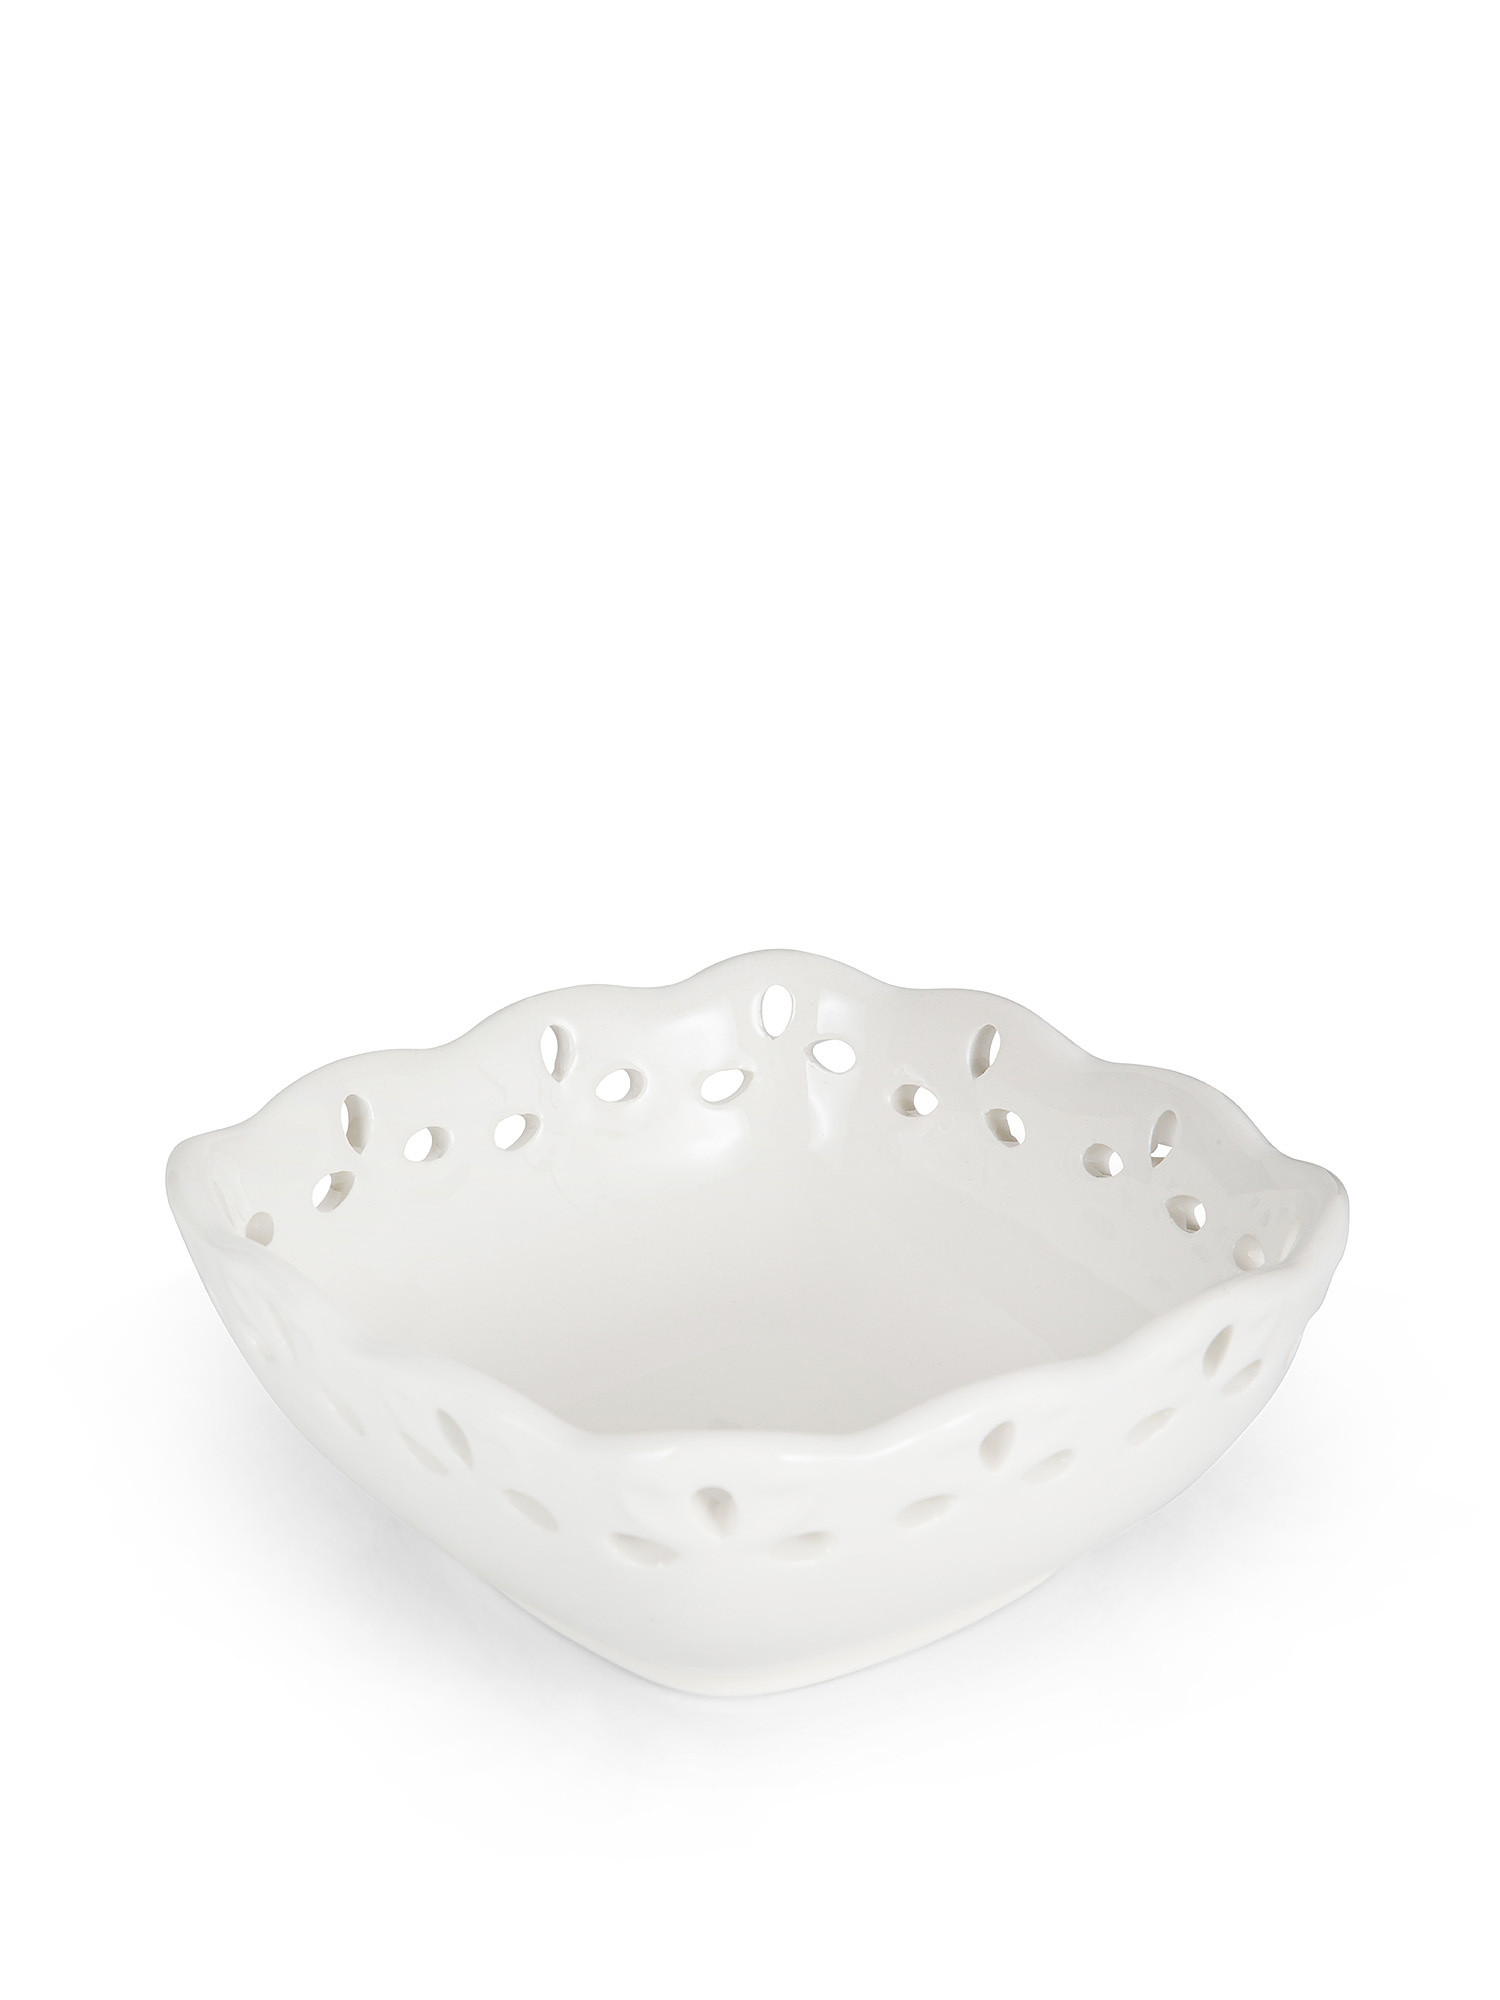 Coppetta ceramica con bordo traforato, Bianco, large image number 1